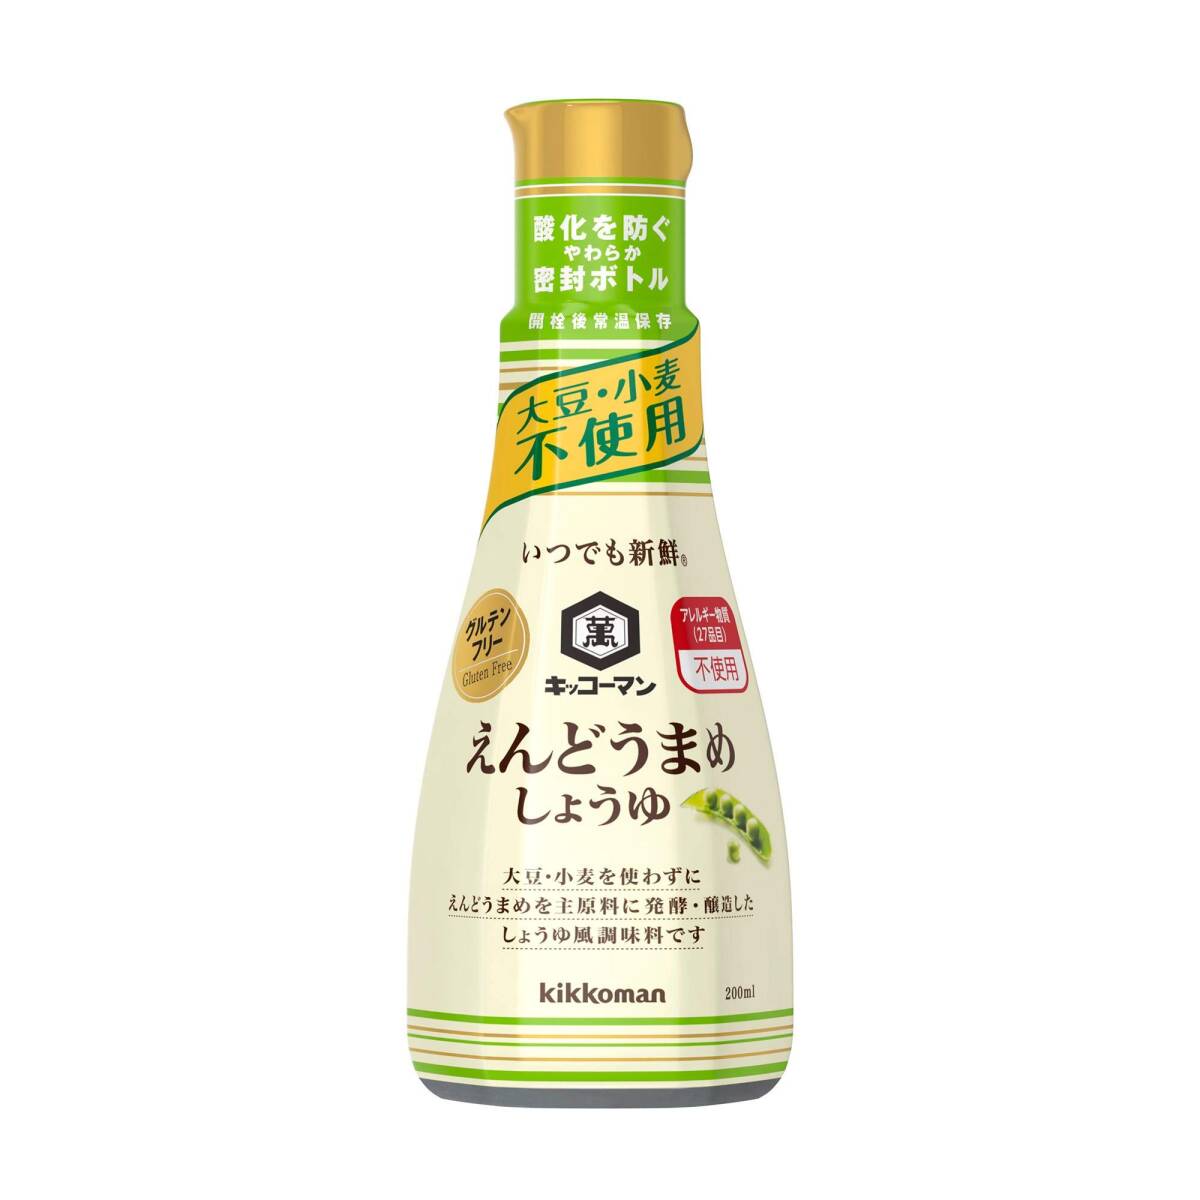 kiko- man food [ allergy correspondence gru ton free ] at any time fresh ...... soy 200ml×3 piece 